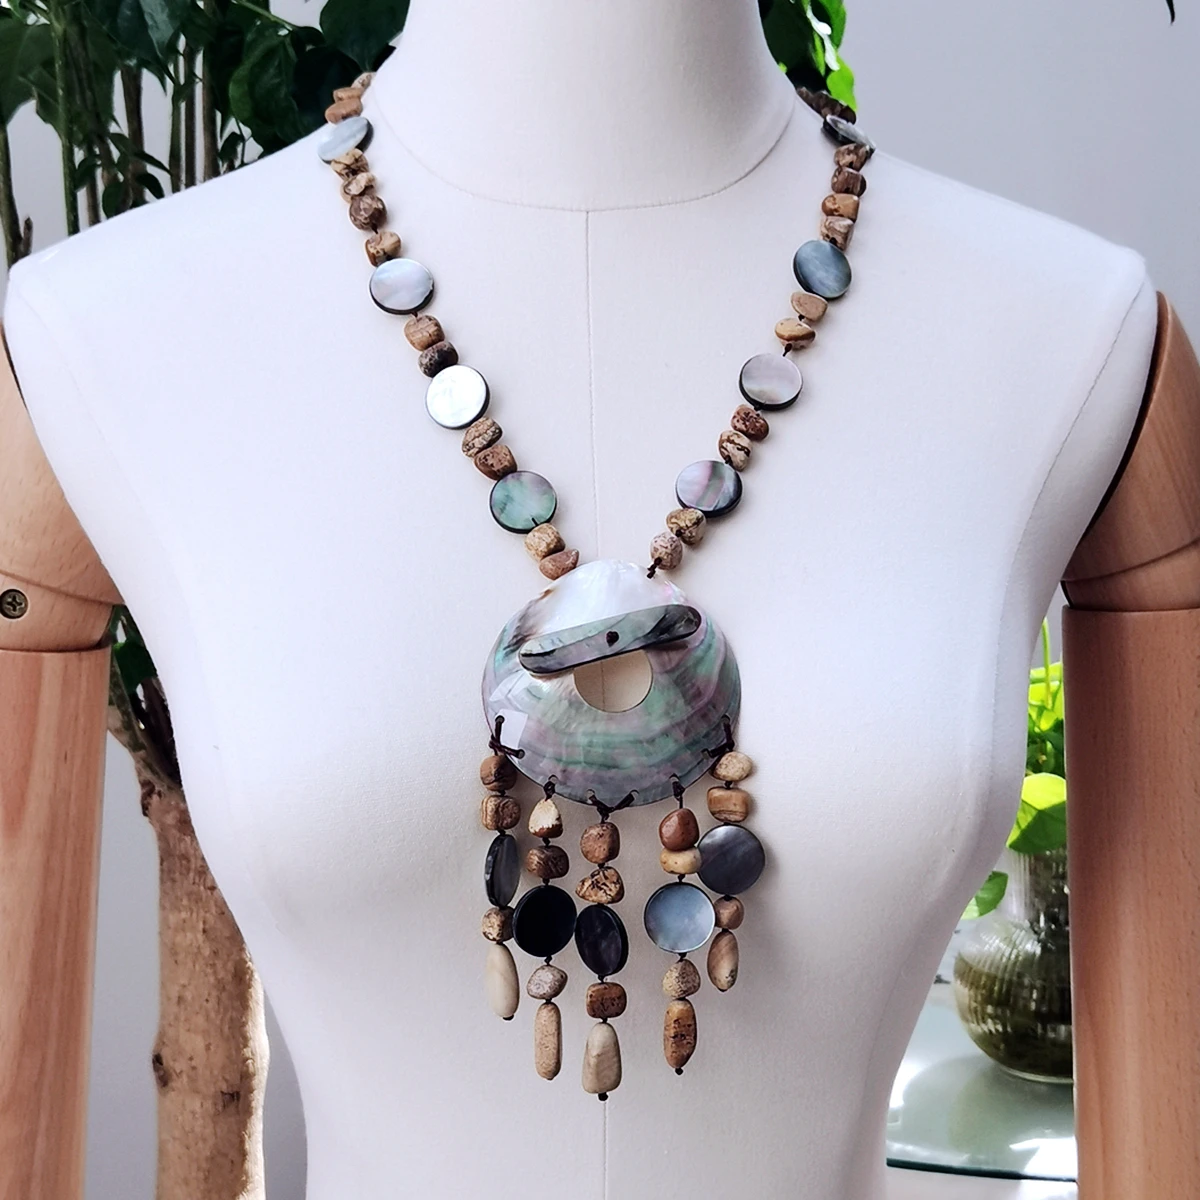 

Lii Ji, коричневый цвет, ожерелье с изображением яшмы, ракушки, подвески, кисточки, ожерелье 60 см, в наличии, распродажа, Женские Ювелирные издел...